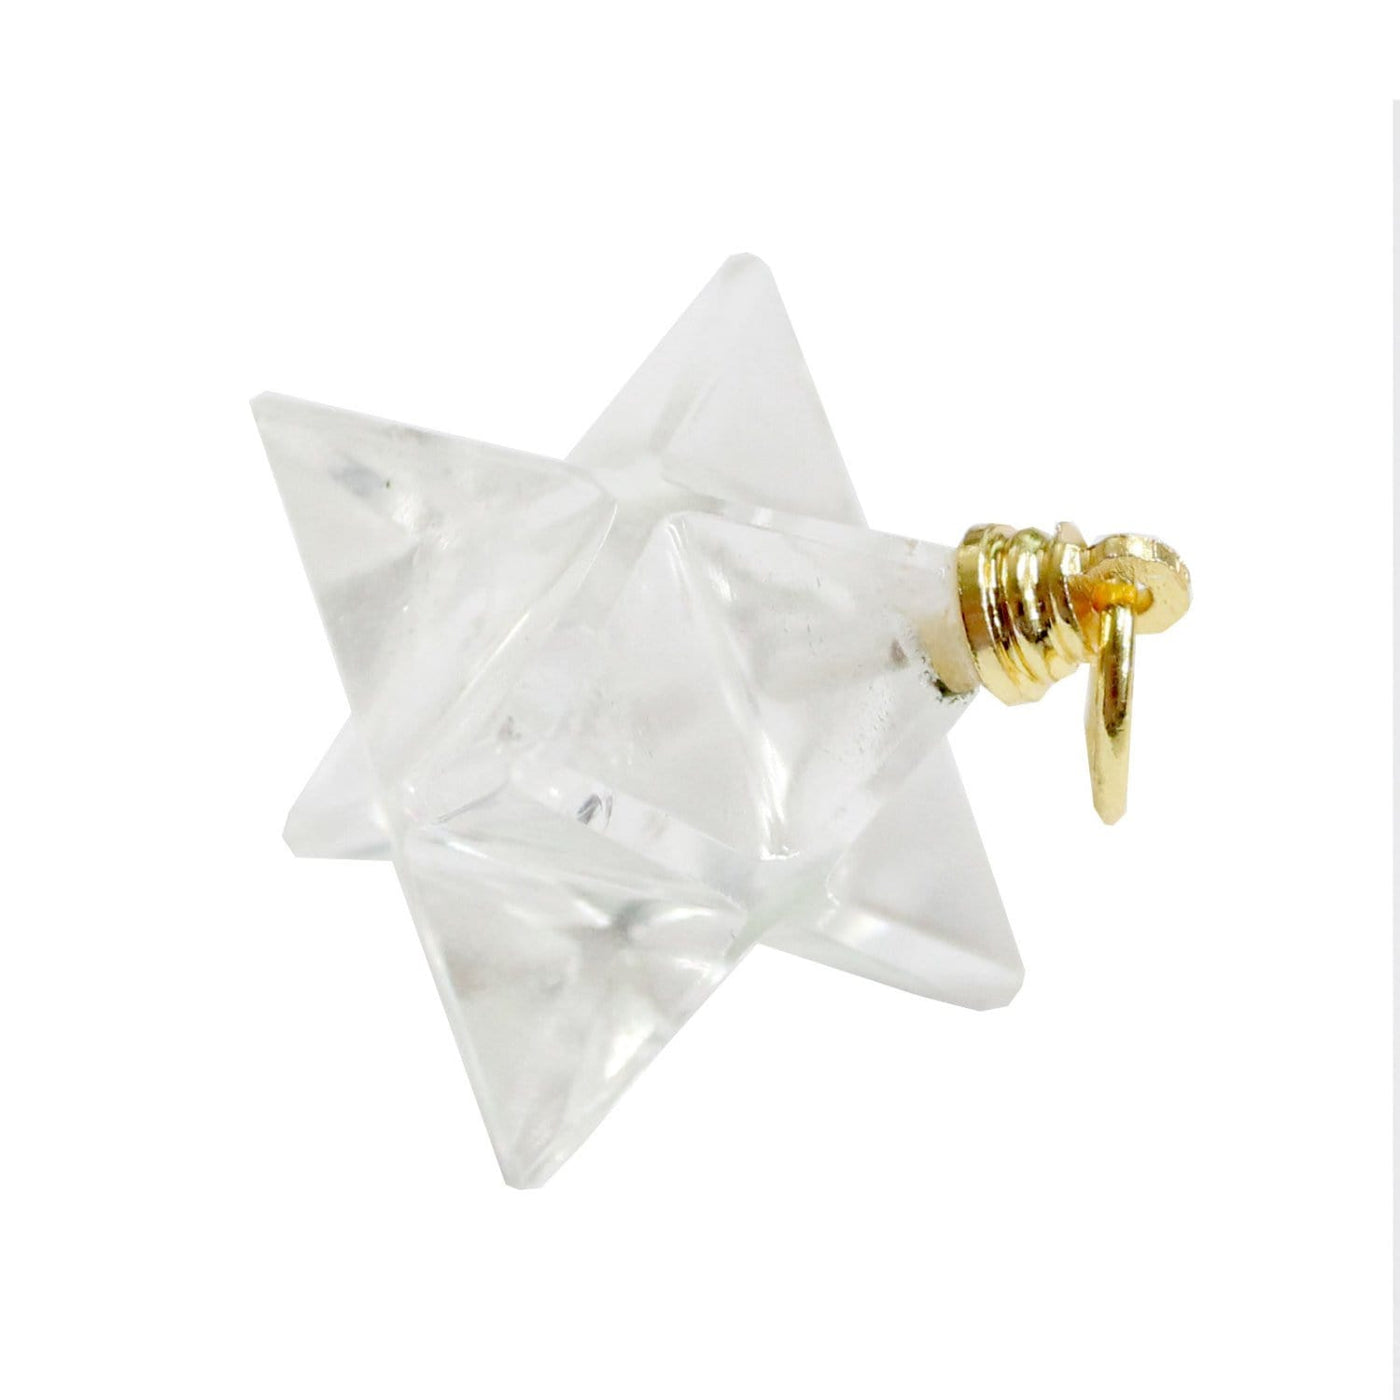 crystal quartz merkaba star pendant on white background